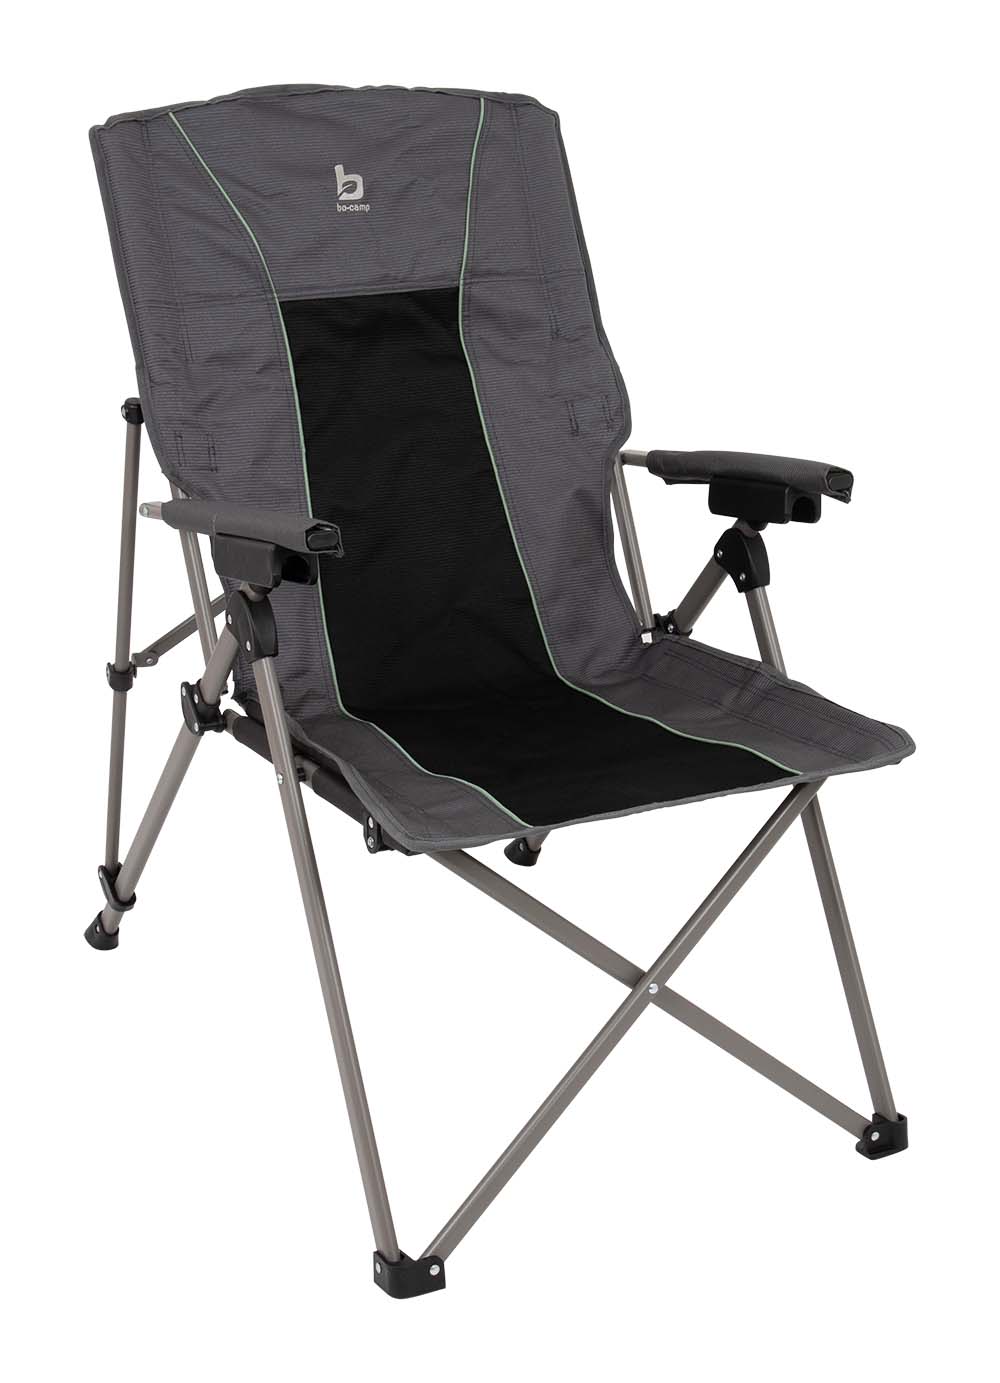 1204738 "Ein luxuriöser Klappstuhl mit verstellbarer Rückenlehne. Die Rückenlehne dieses komfortablen Stuhls kann in 4 Stufen verstellt werden. Das gibt dem Stuhl einen ""aktiveren"" Sitz zum Tisch. Besonders stabil durch den Stahlrahmen und den 600-Den-Nylon-Bezug. Die bezogenen Armlehnen bieten extra Komfort. In einer praktischen Tragetasche geliefert (LxBxH: 102x18x18 cm). Sitzhöhe: 43 cm. Sitztiefe: 45-50 cm. Sitzbreite: 62 cm. Rückenlänge: 65 cm. Maximale Traglast: 100 kg."